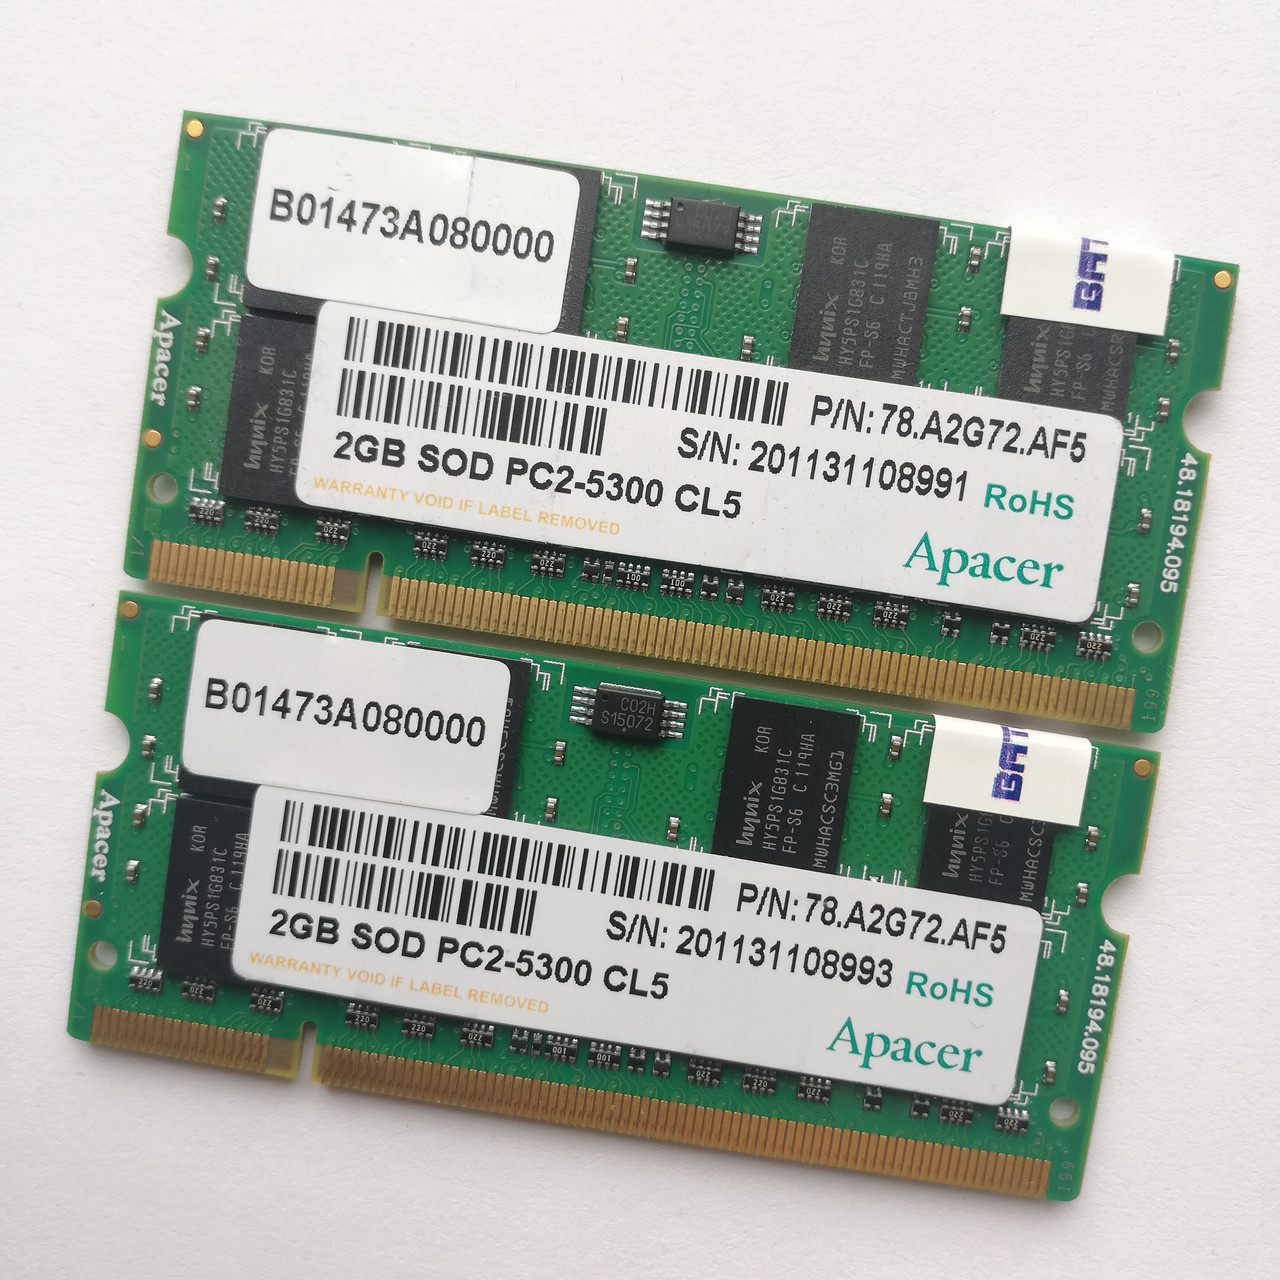 Комплект оперативной памяти для ноутбука Apacer SODIMM DDR2 4Gb (2Gb+2Gb) 667MHz 5300s CL5 (78.A2G72.AF5) Б/У, фото 1